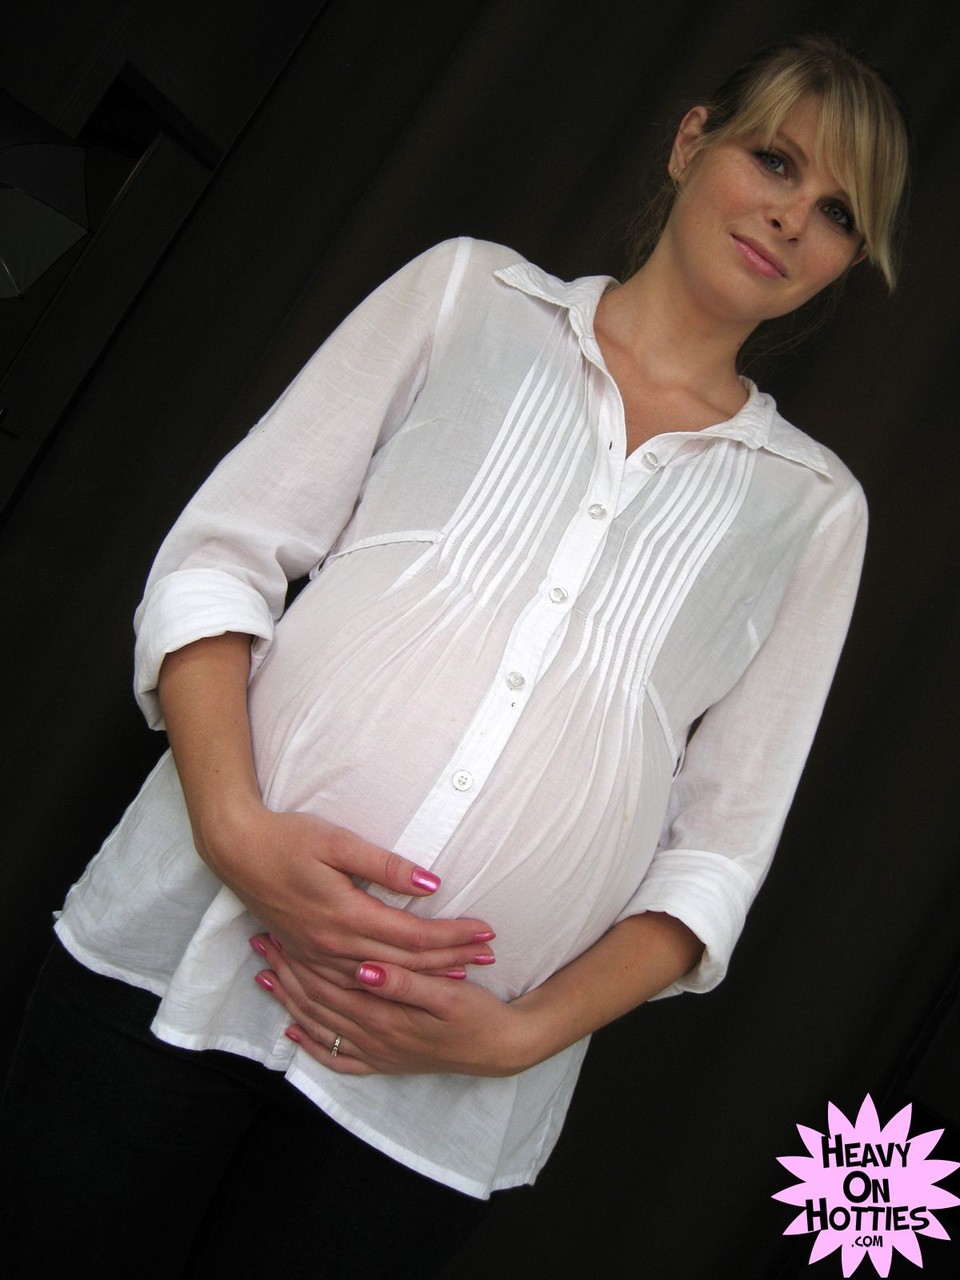 Sweet pregnant Ukrainian Wiska milks her big tits and gives a blowjob Porno-Foto #428635789 | Heavy On Hotties Pics, Wiska, Pregnant, Mobiler Porno